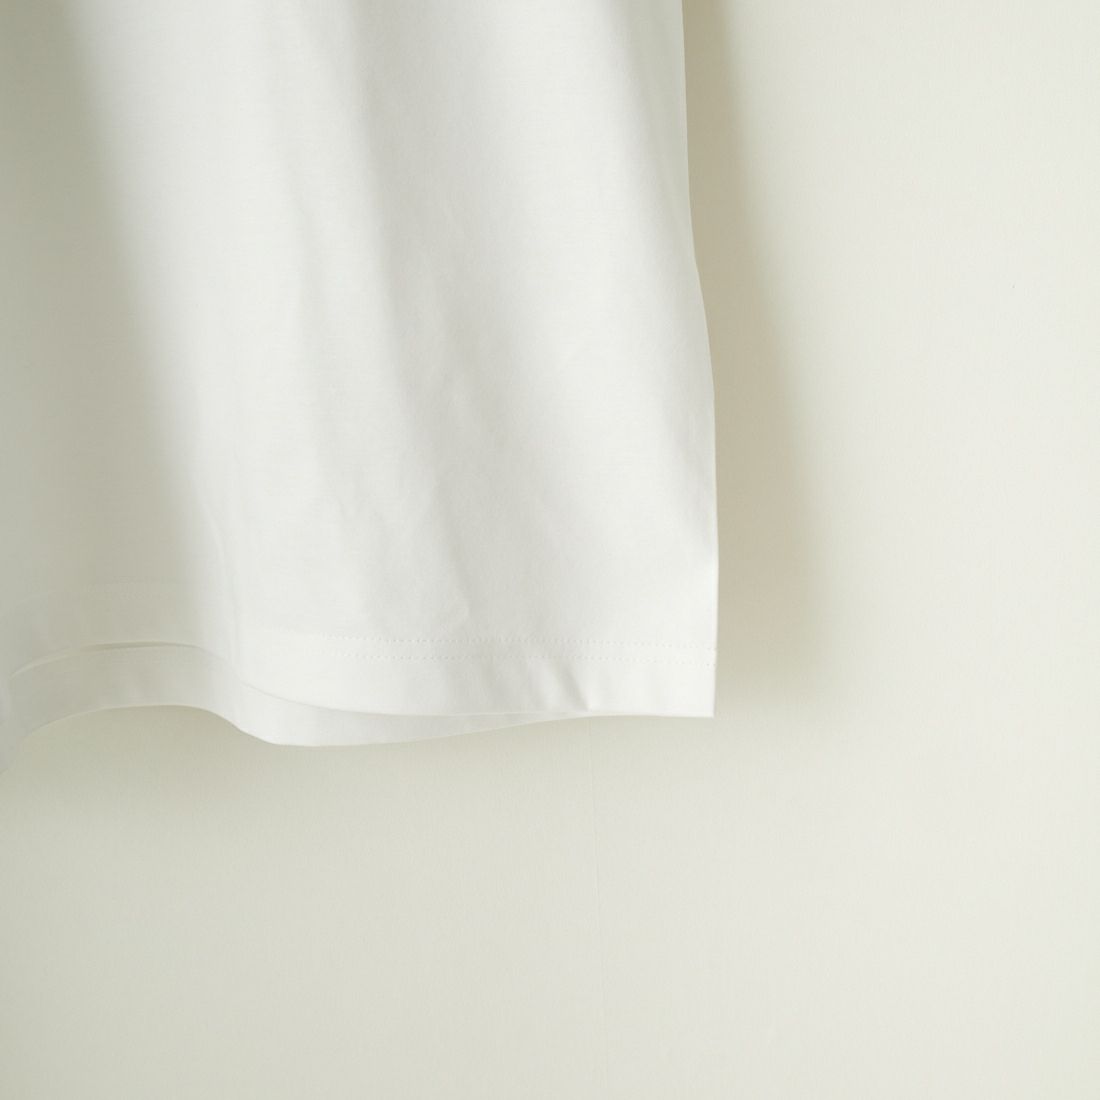 TATRAS [タトラス] NUNKI/ヌンキ ブランドロゴTシャツ [MTAT24S8193-M] WHITE